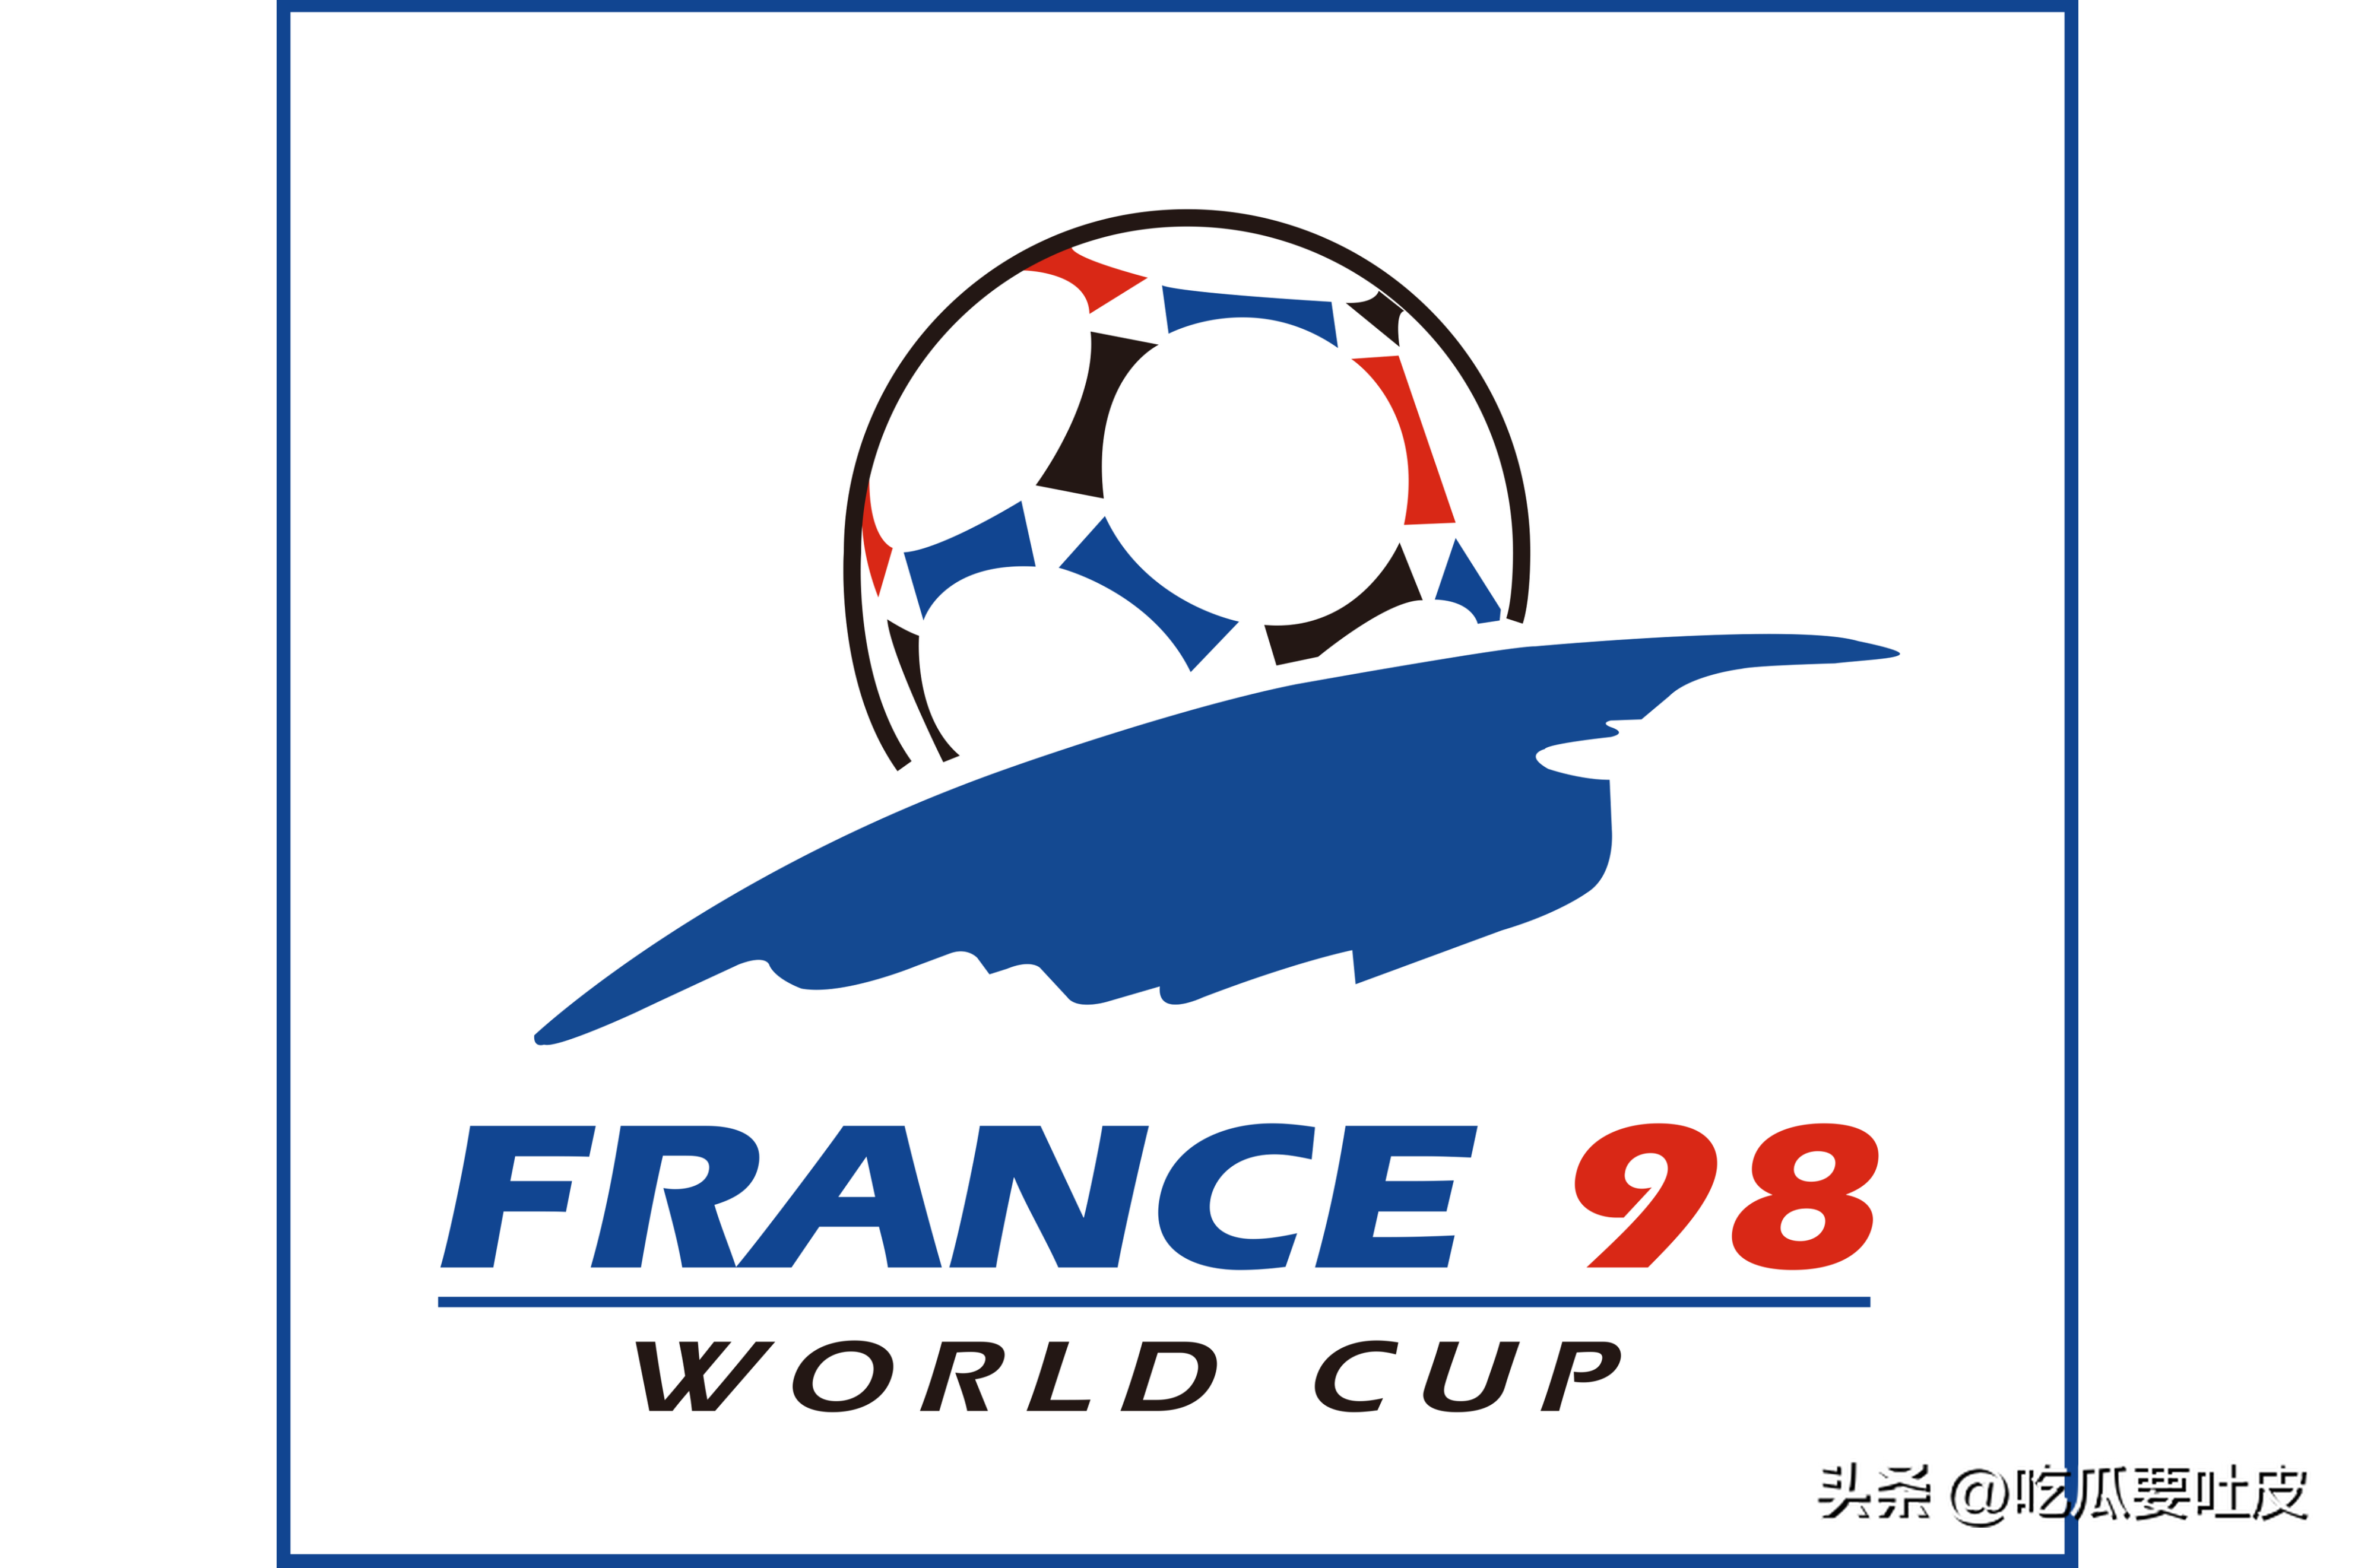 1998世界杯综述，群星闪耀，激情法兰西